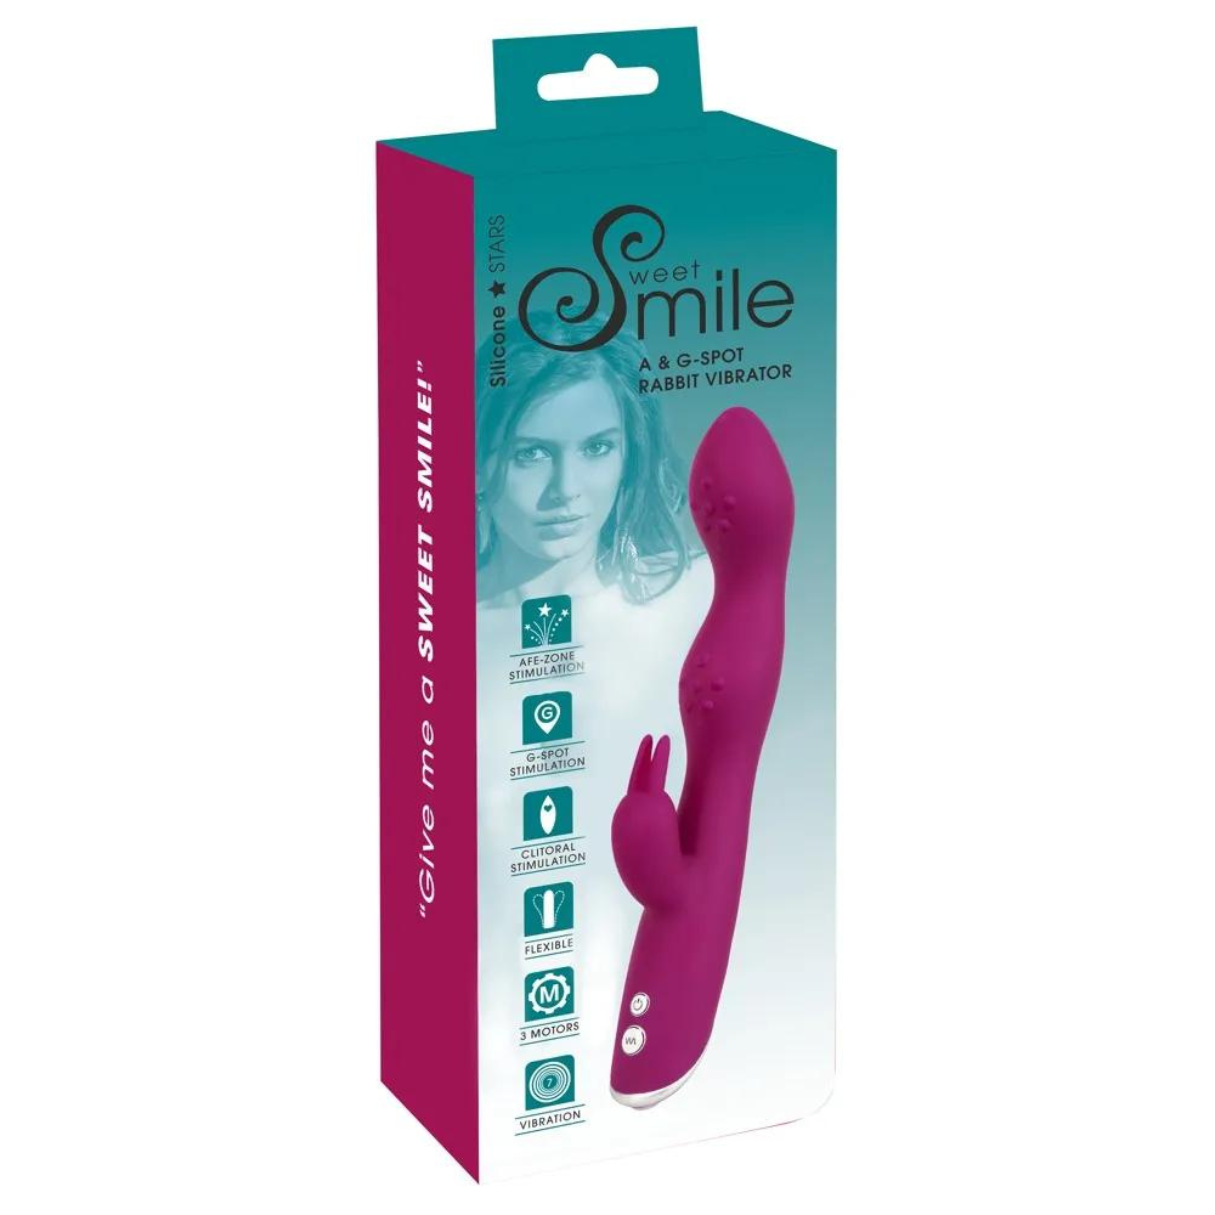 SWEET SMILE A & Vibrator Rabbit Vibrator G-Spot